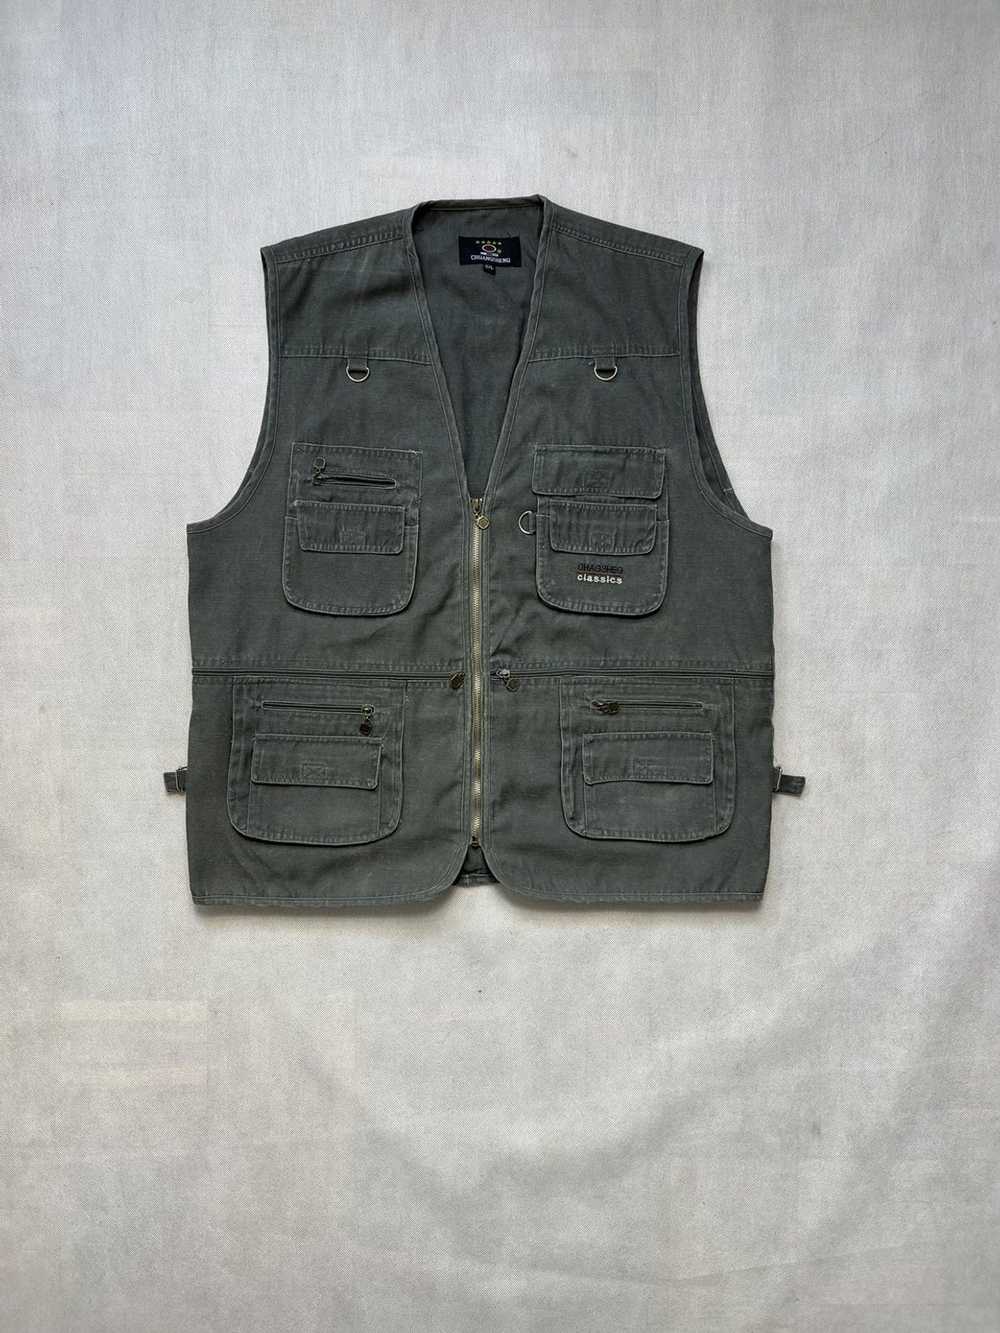 Military × Vintage Vintage vest multi pocket army… - image 1